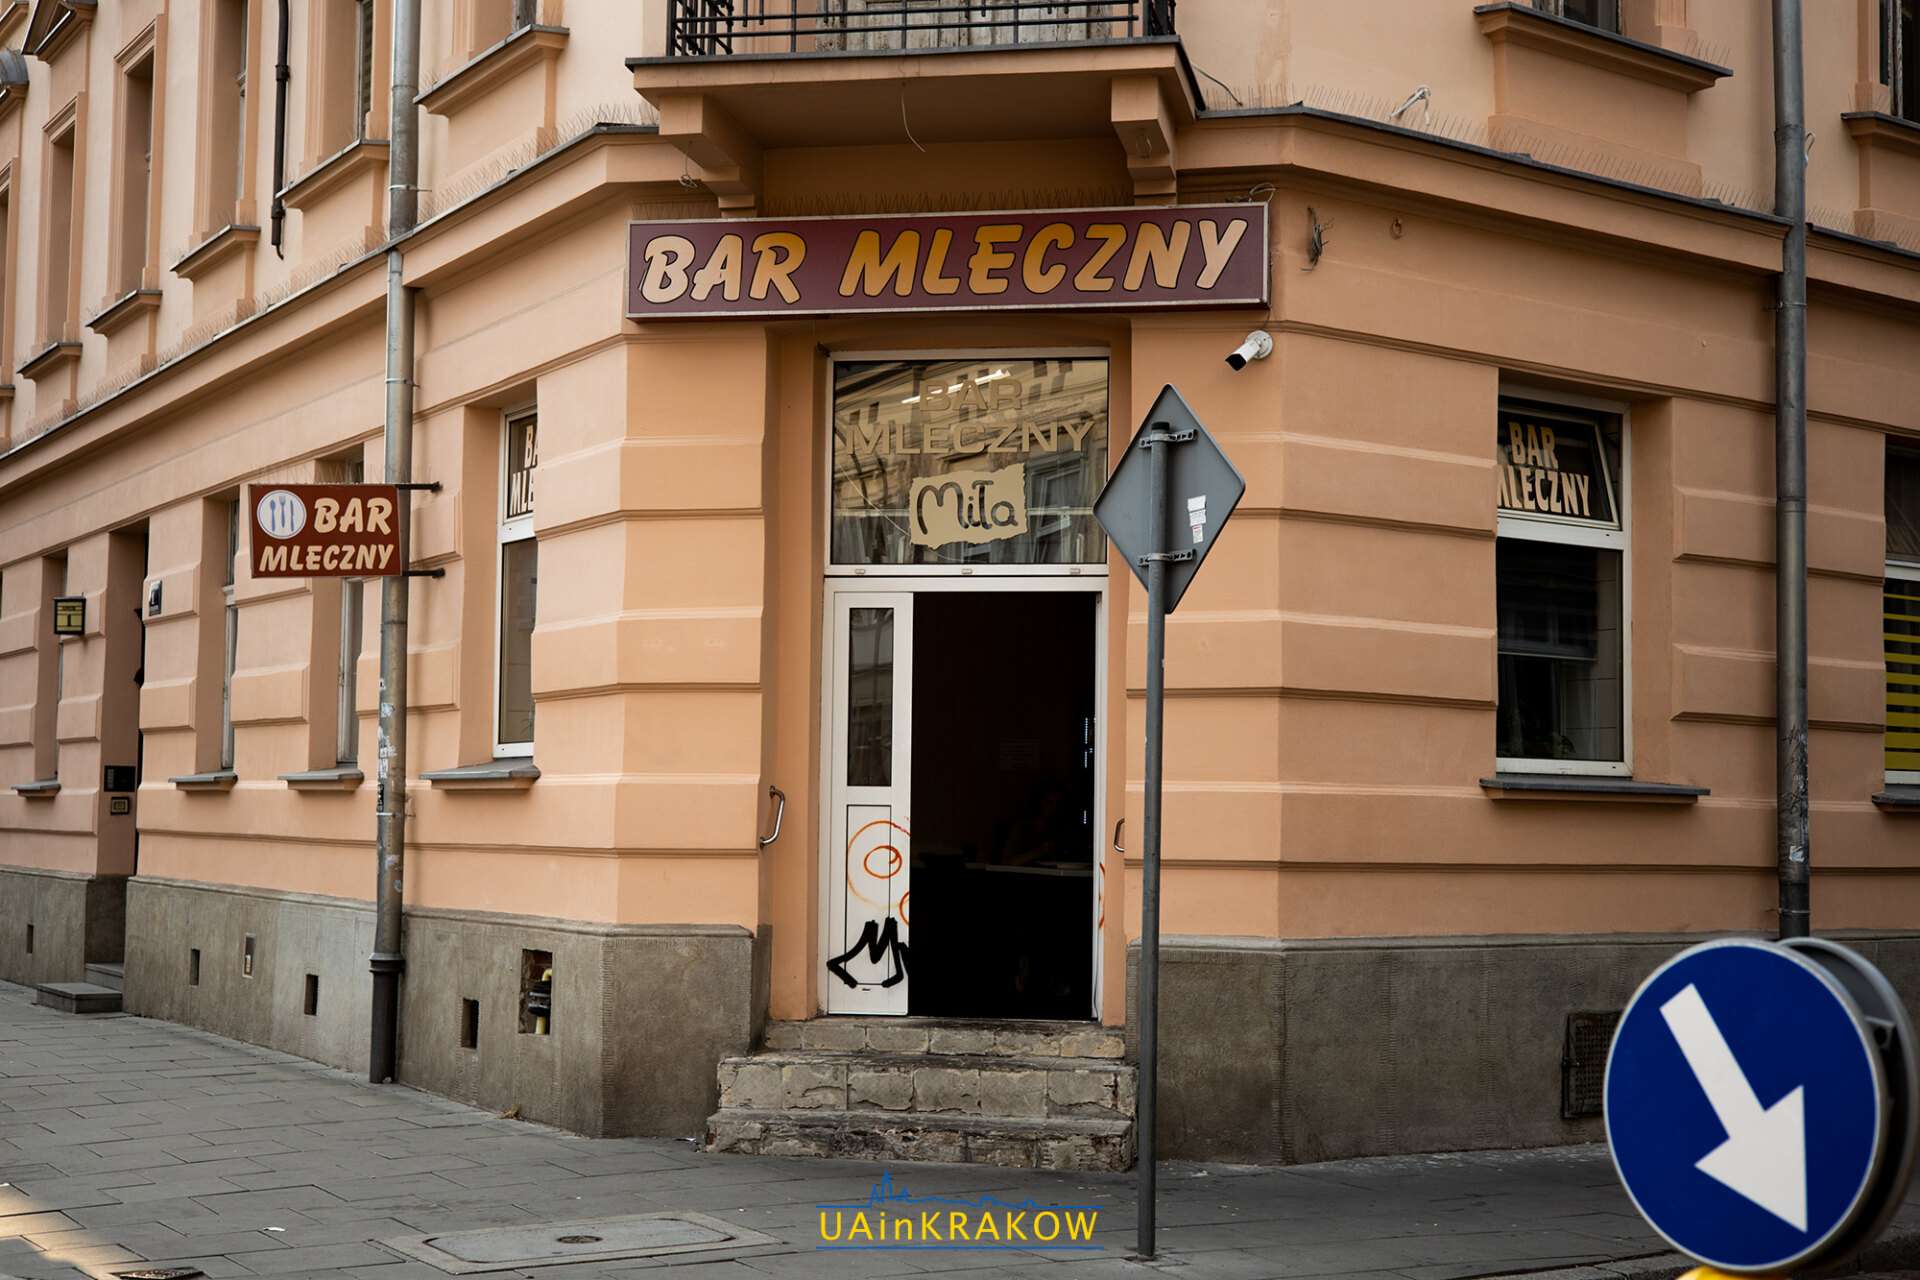 Дешево та сито: підбірка барів млєчних у Кракові, де можна недорого поїсти L A UAinKrakow.pl